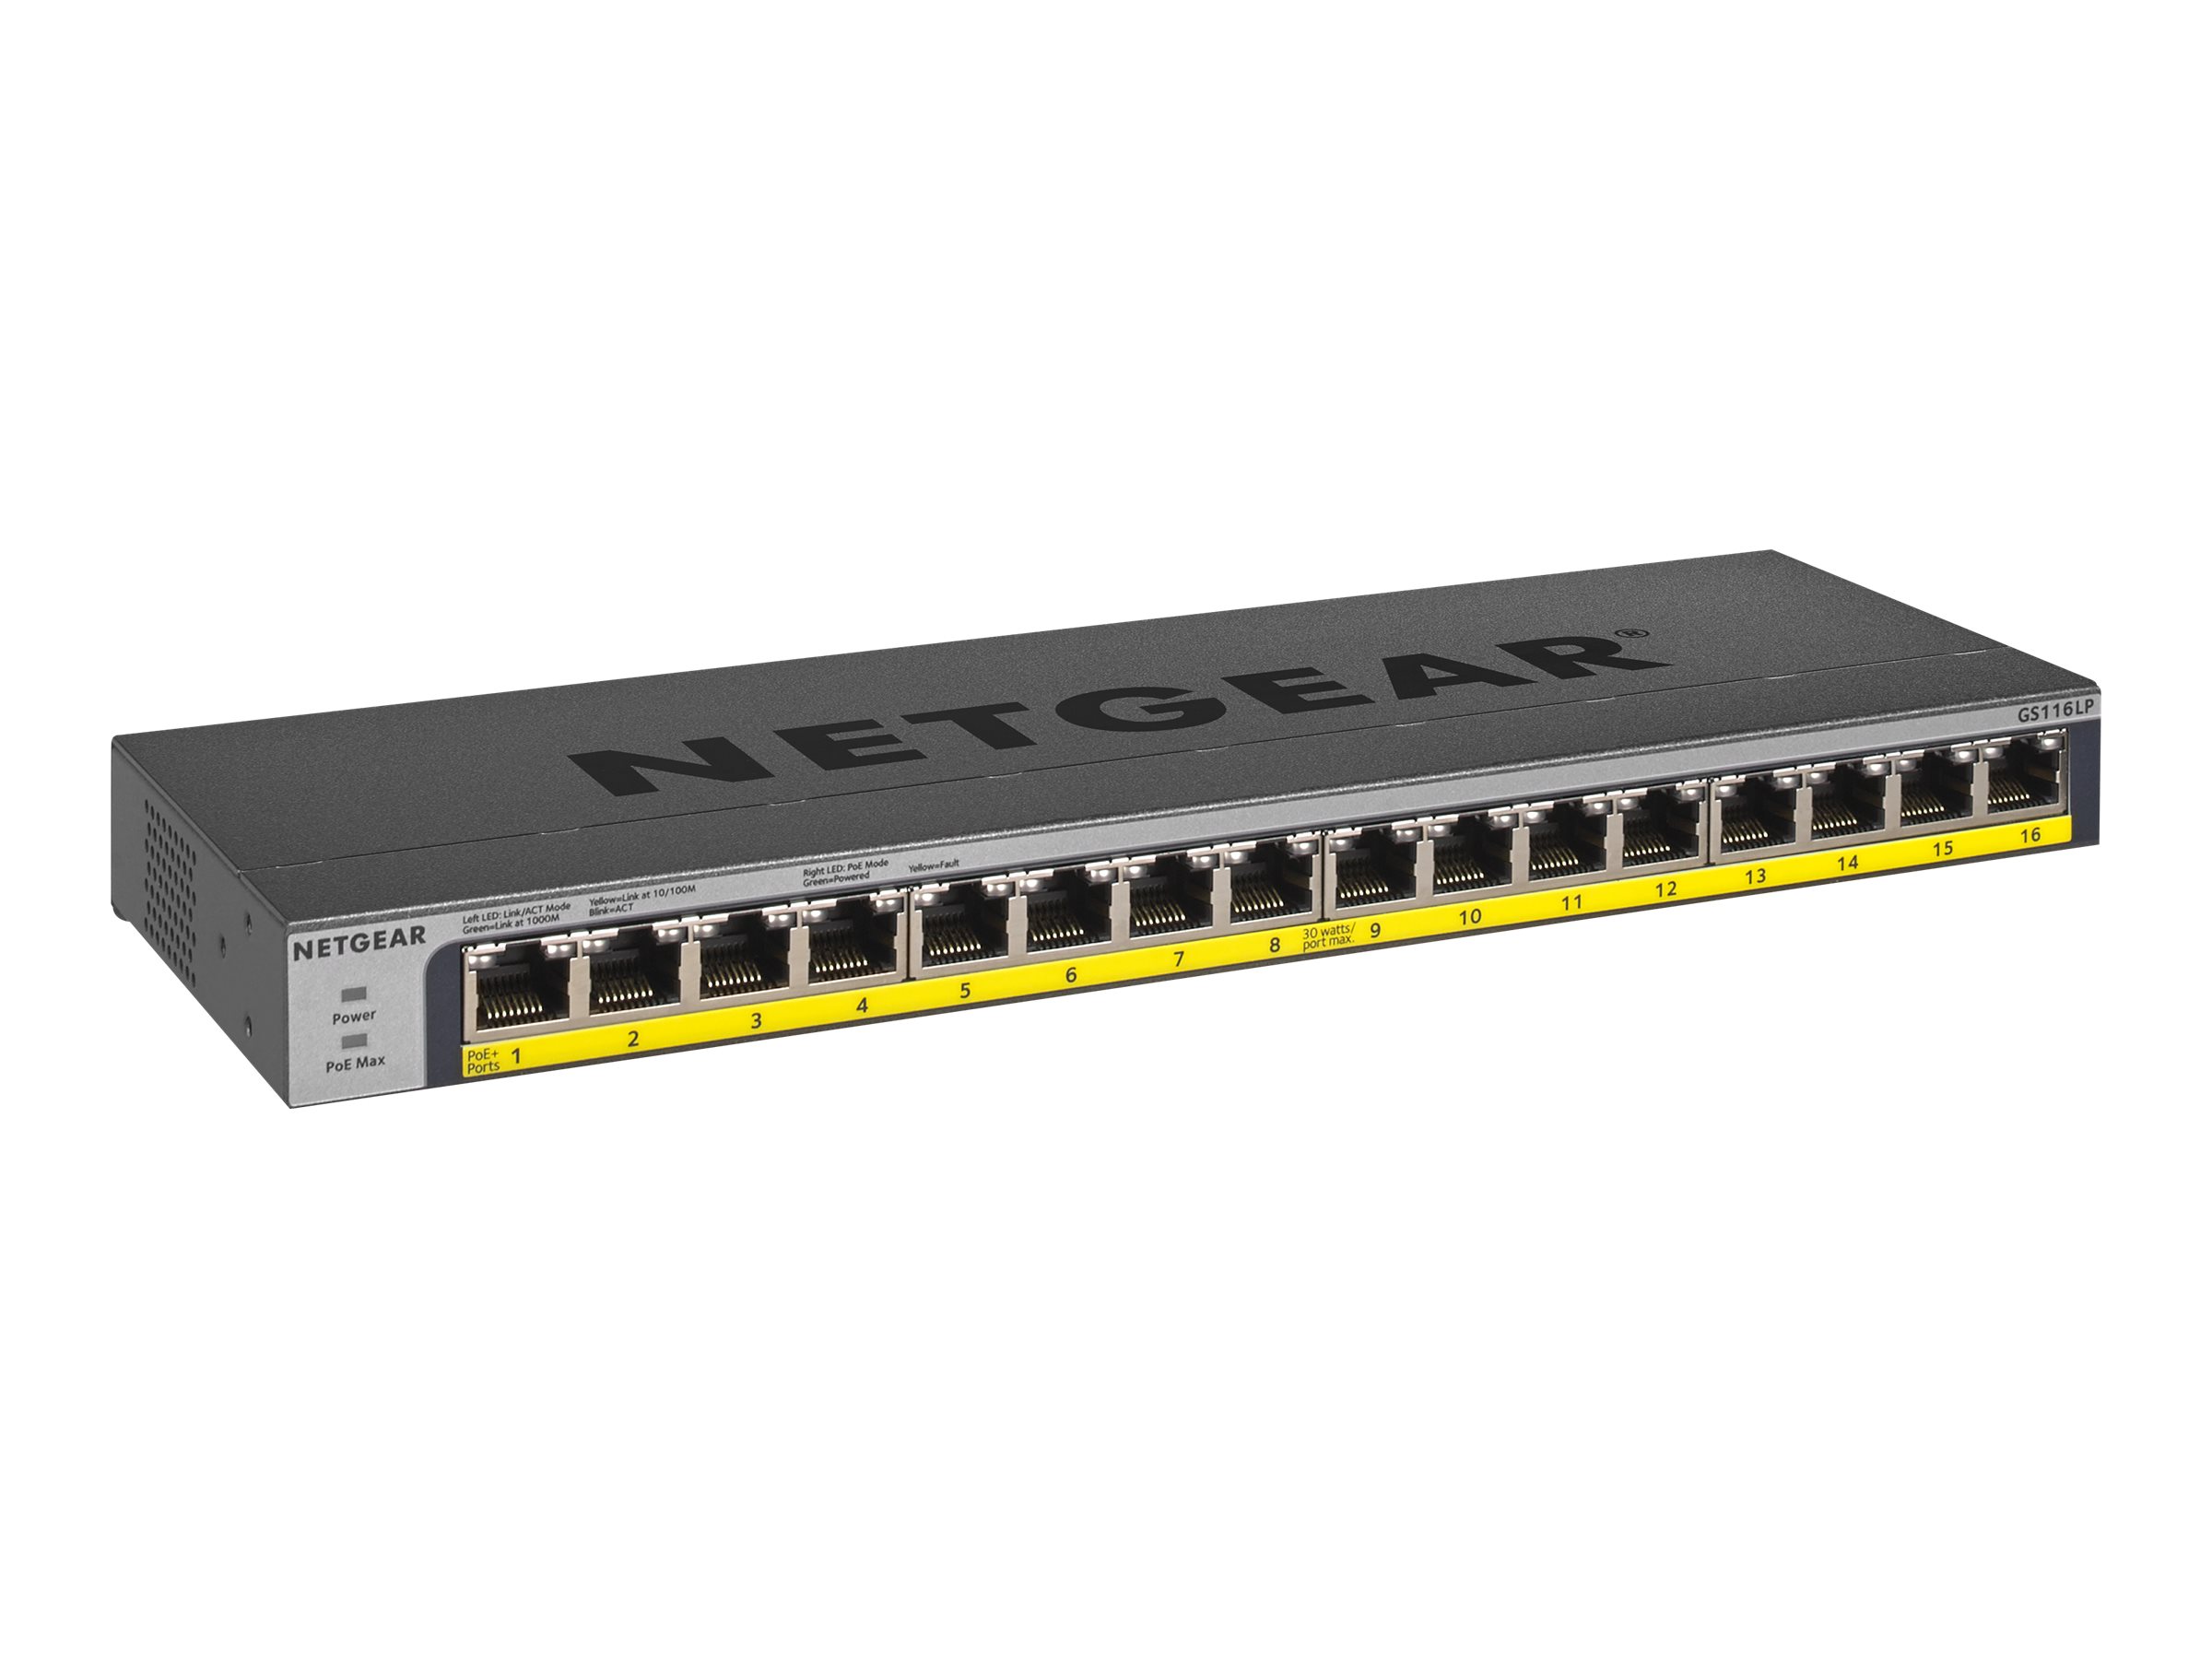 NETGEAR GS116LP – Switch